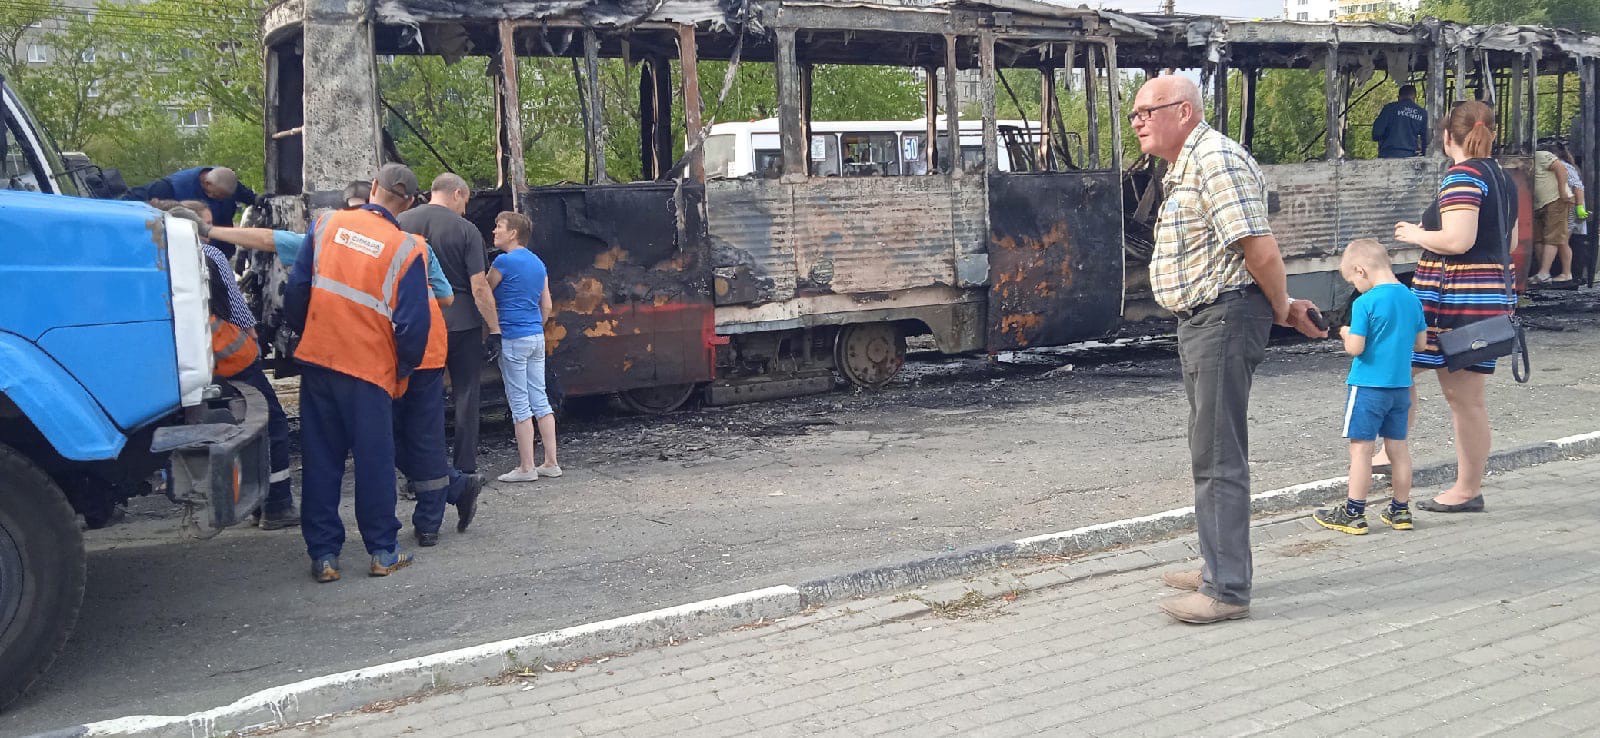 Трамвай Нижний Тагил сгорел. Нижний Тагил трамвай ГАЗ пожар. Загорелся трамвай в Нижнем Новгороде сегодня. Трамвай внежнем Тагиле затопило Вад.